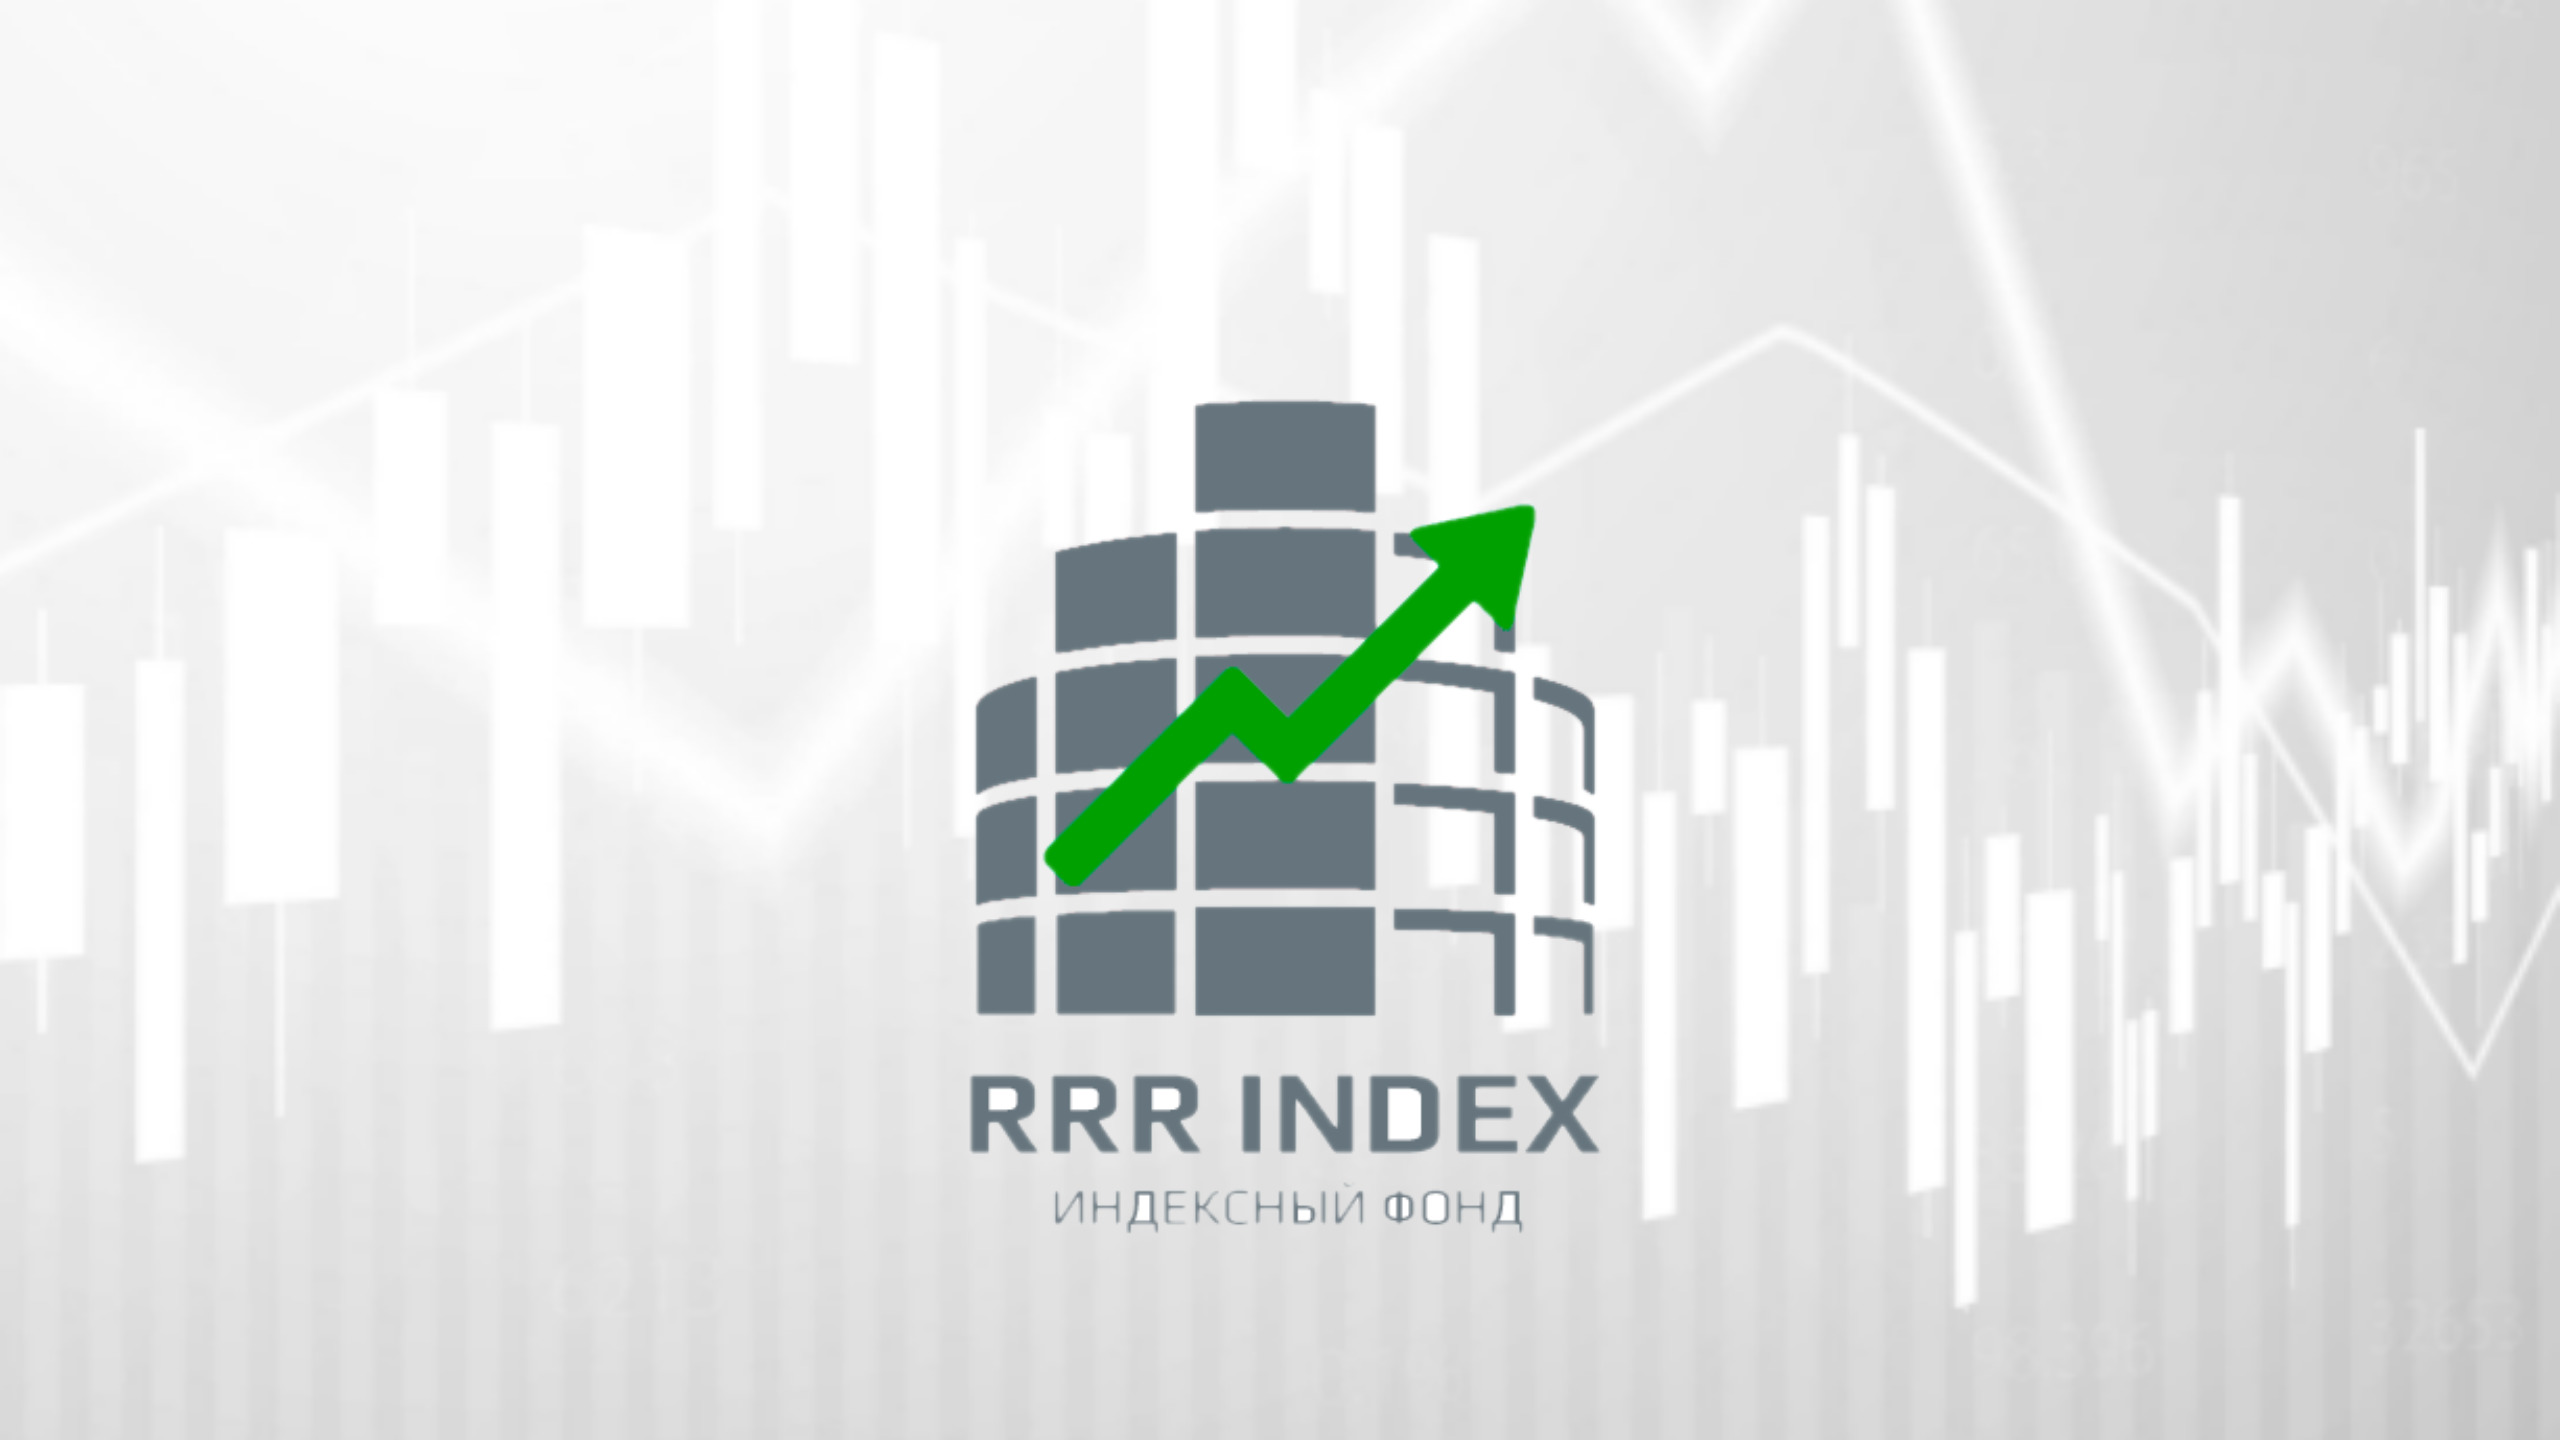 Реализованный проект: «Индексный фонд «RRR Index» как инструмент диверсификации риска инвестирования в долевые финансовые инструменты» 